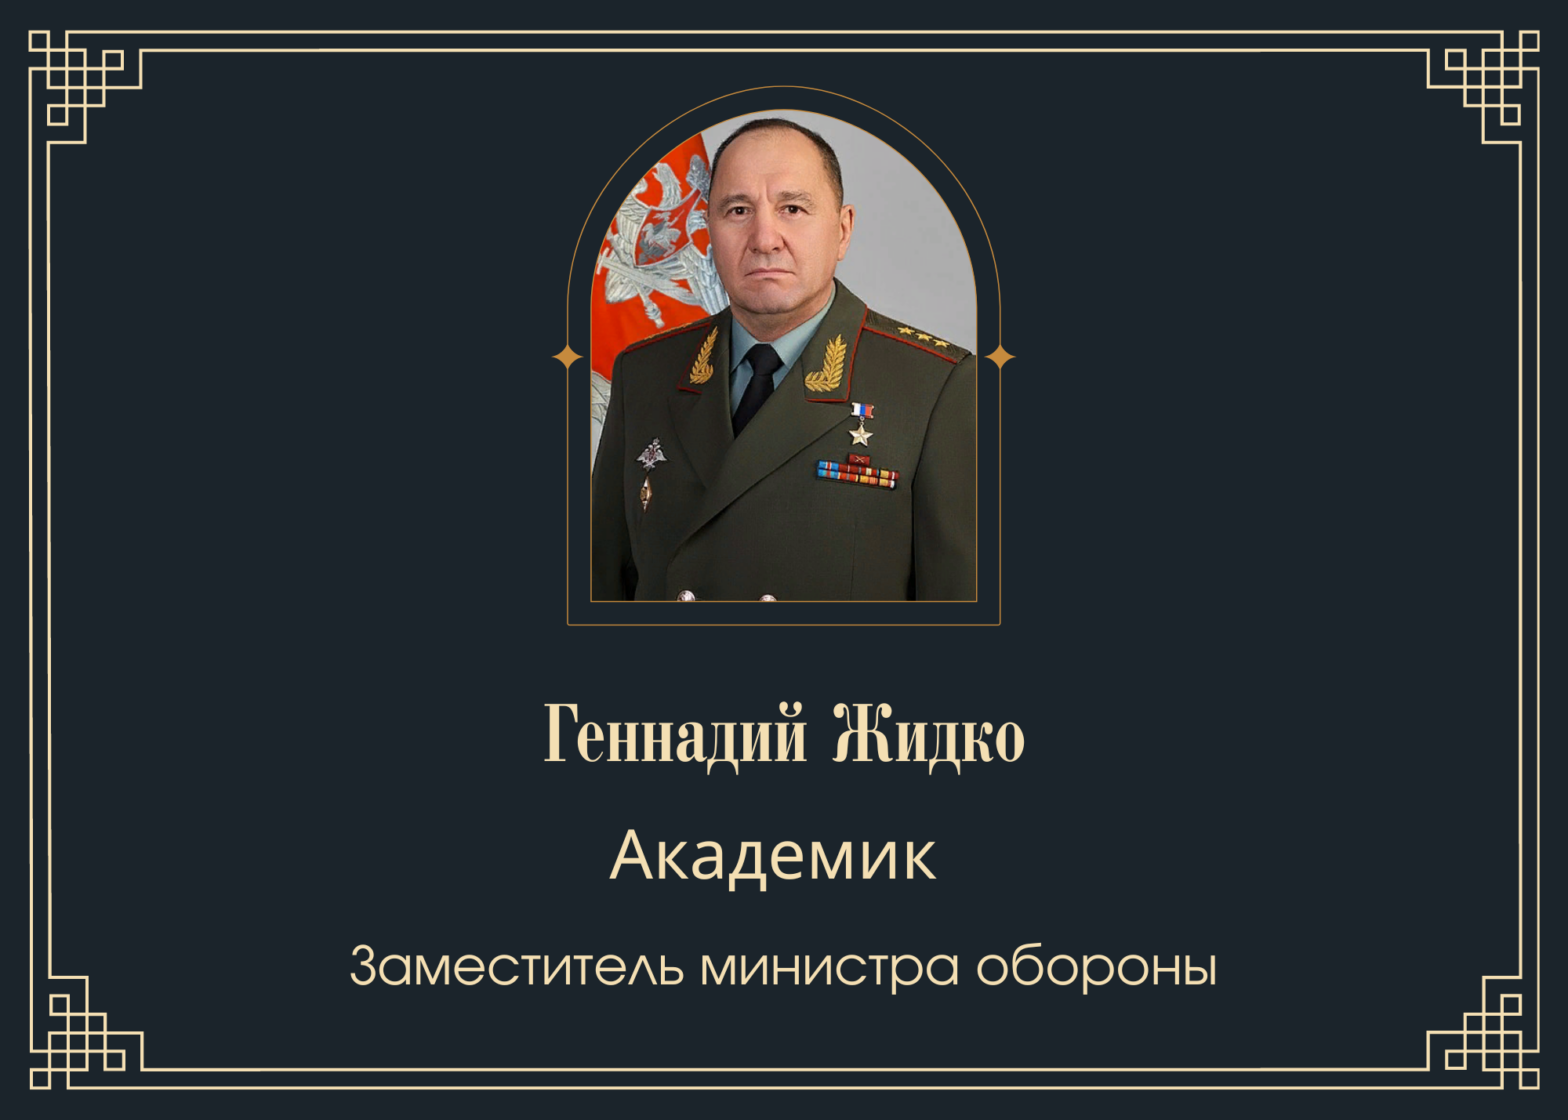 Умер заместитель министра обороны Геннадий Жидко